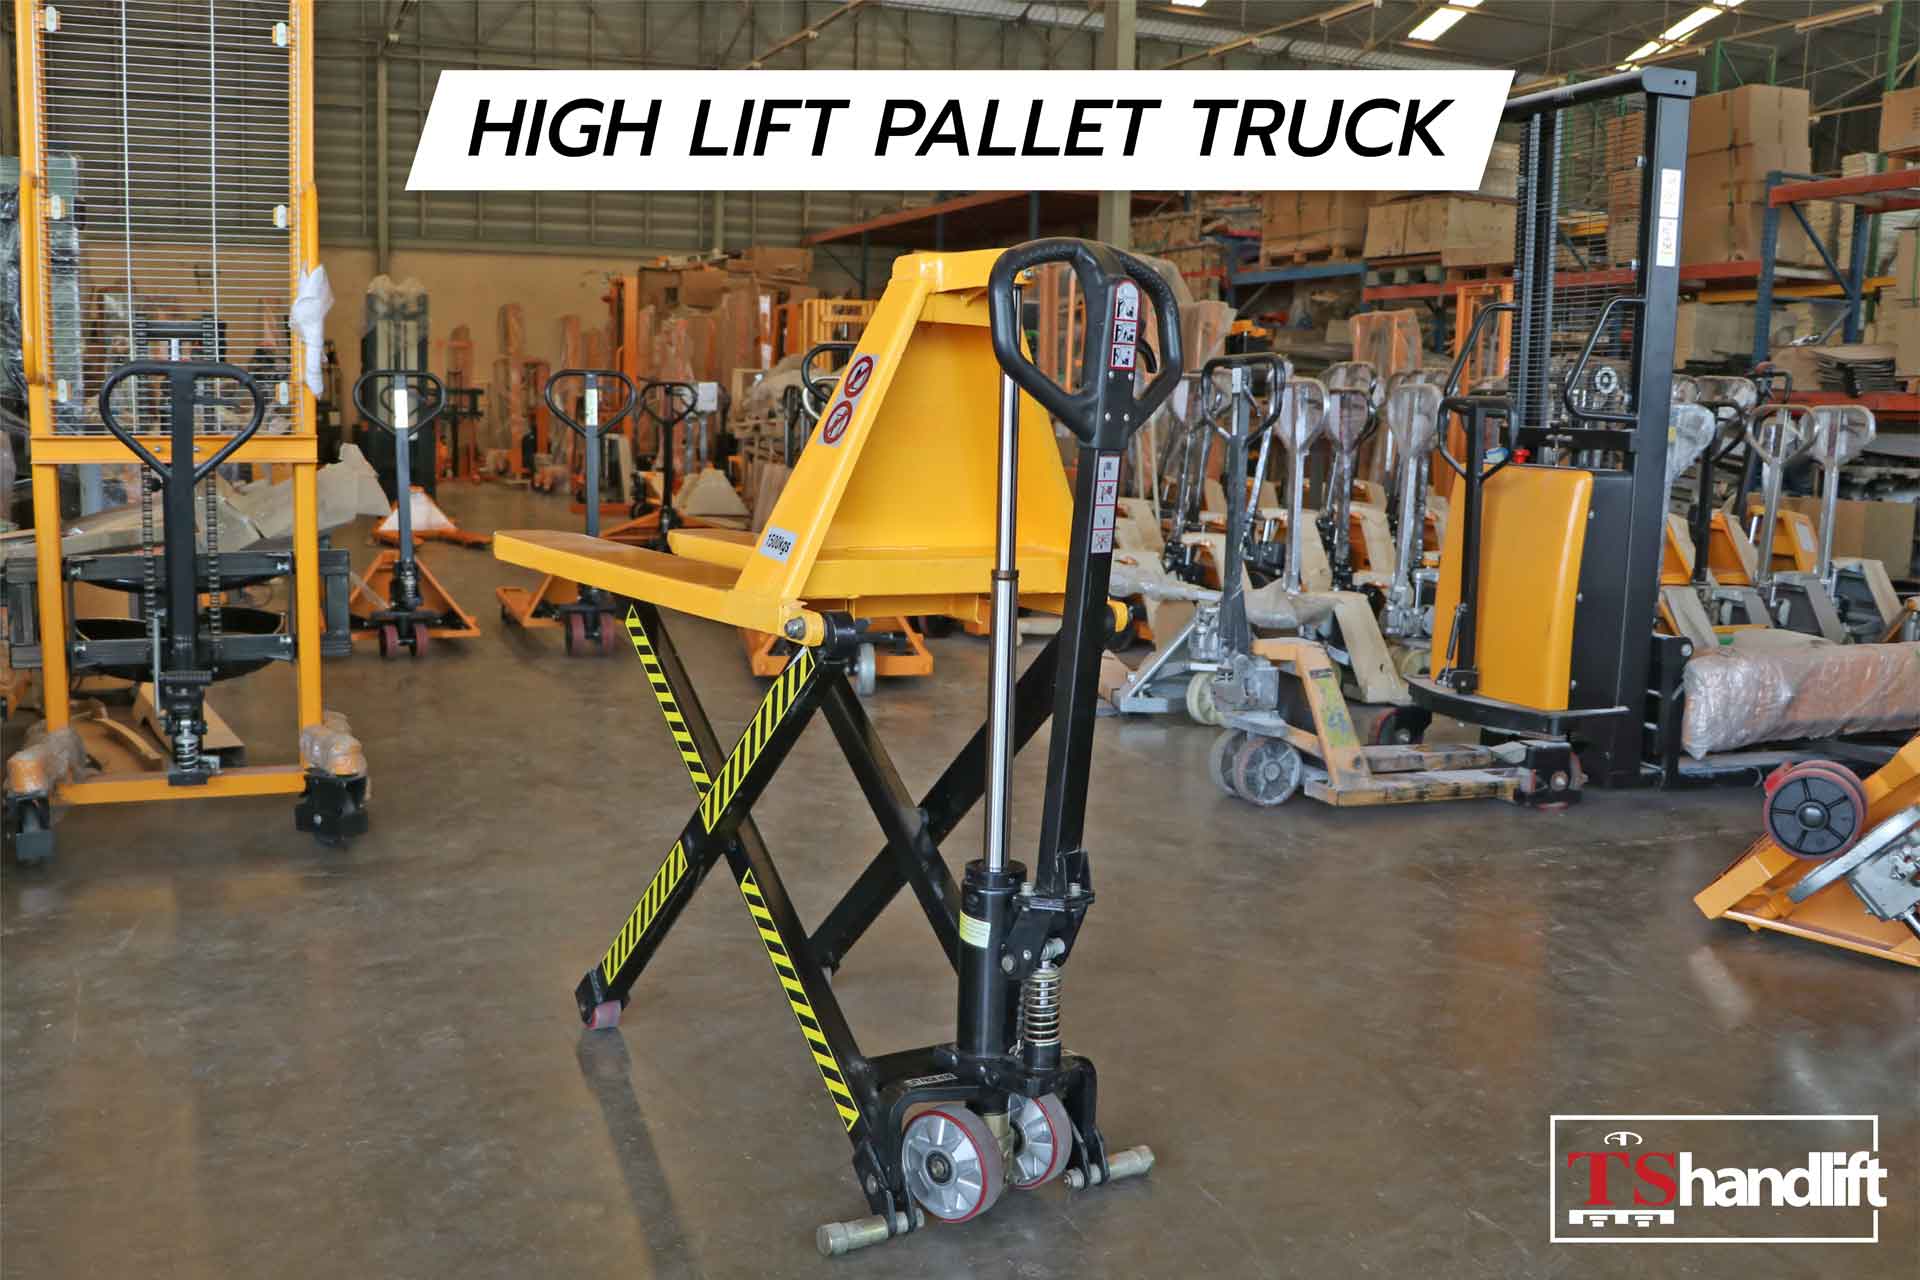 ภาพสินค้าจริงของ high lift pallet truck